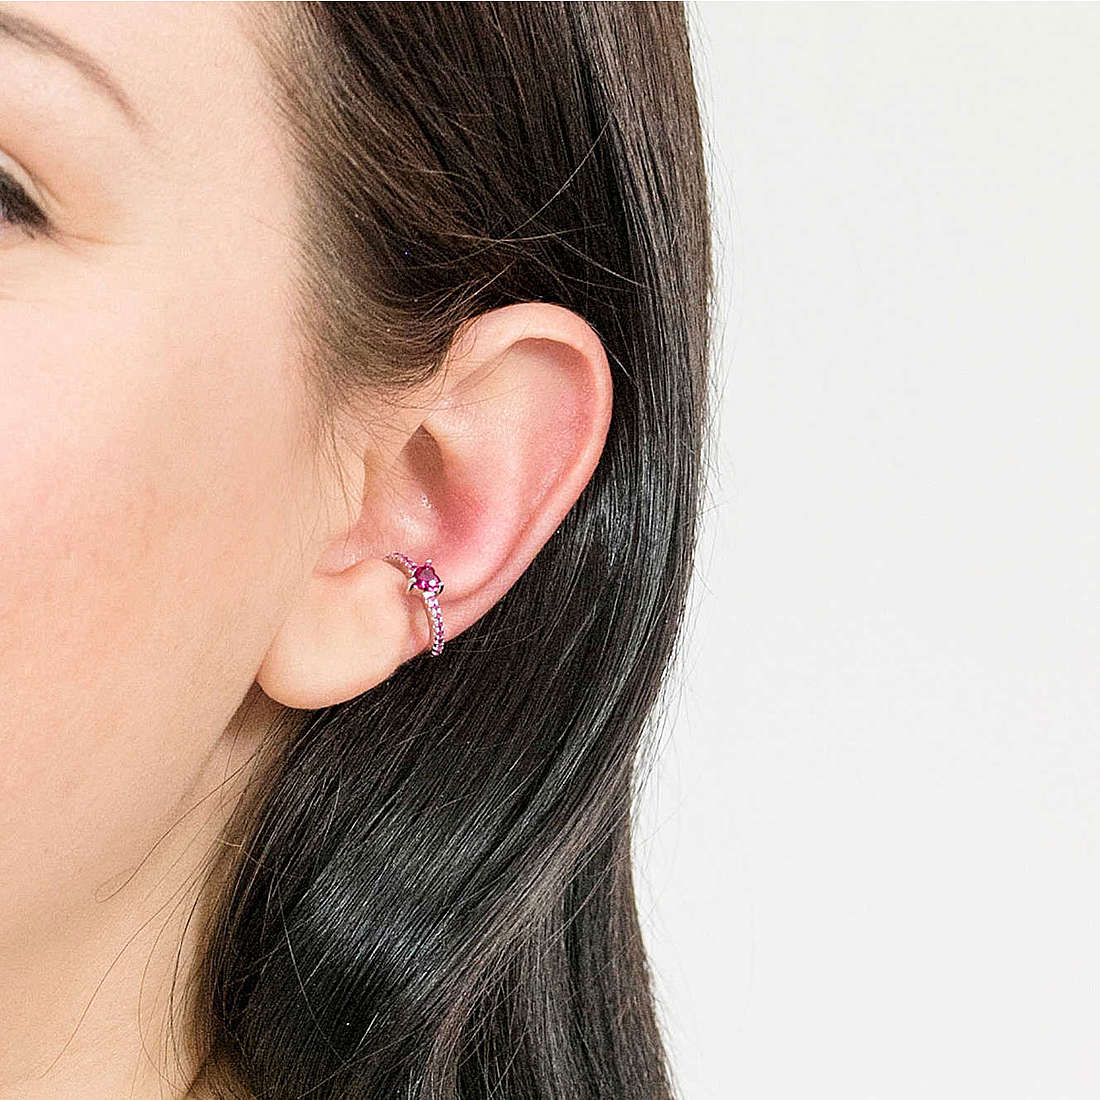 Rebecca earrings Golden ear woman SGEOBR10 wearing